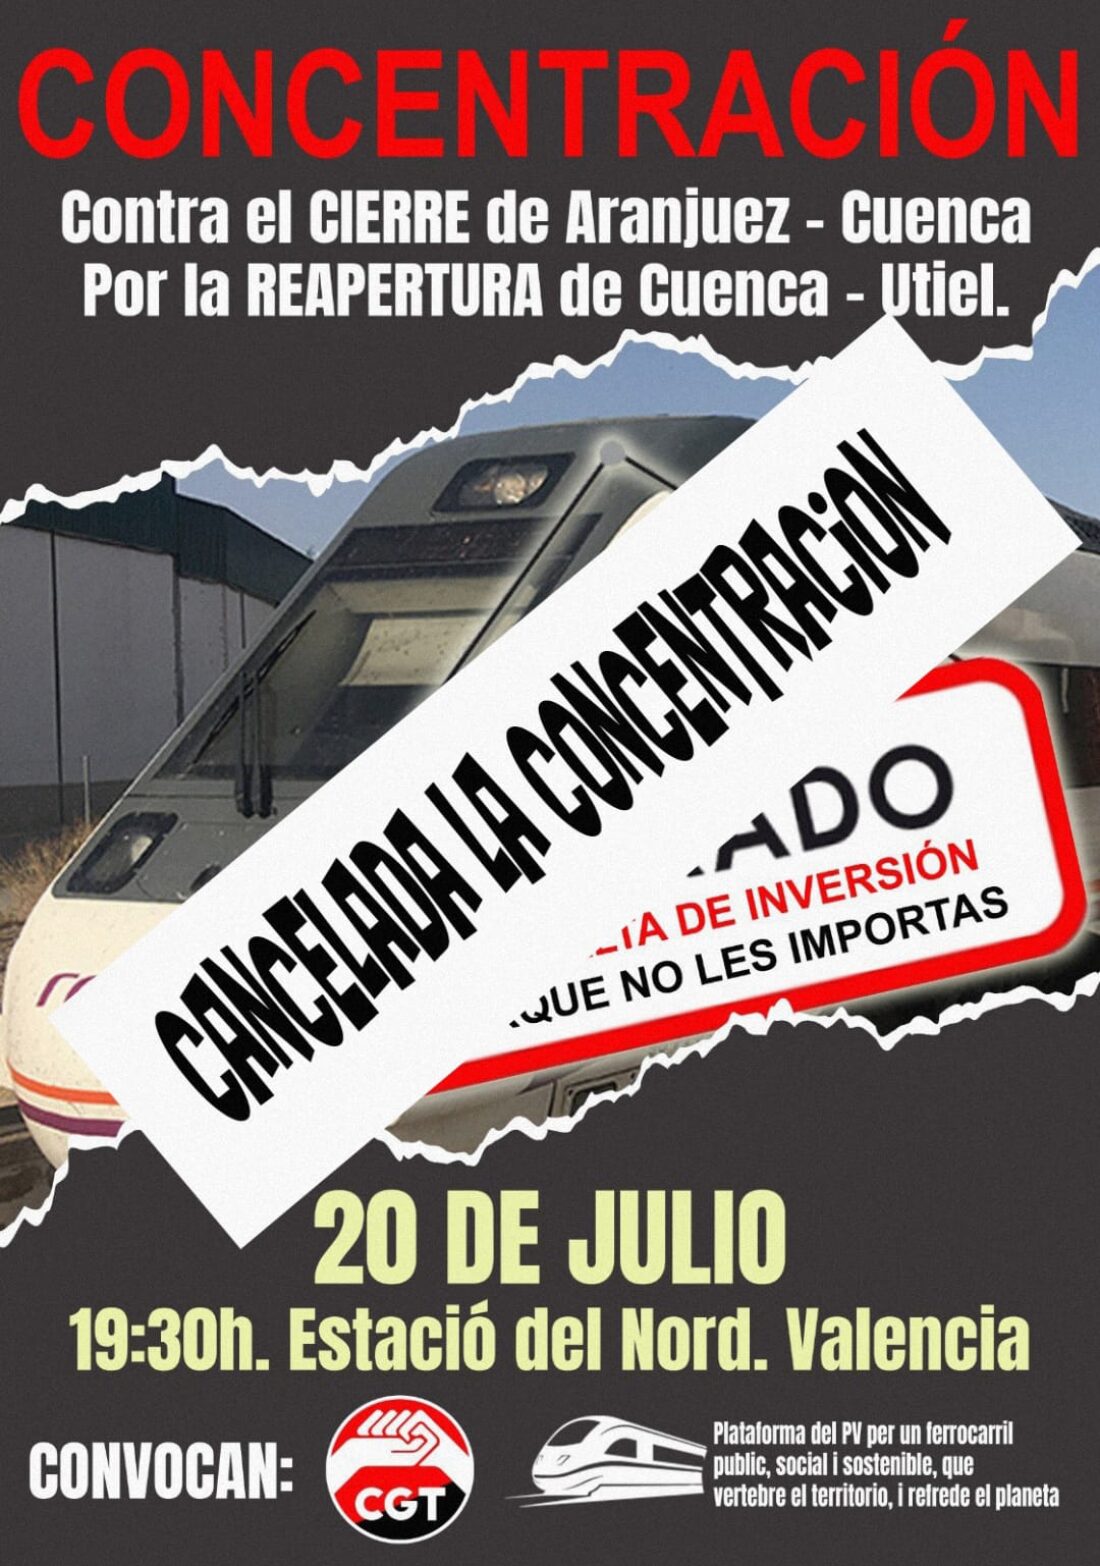 Tren reivindicativo Utiel-Cuenca-Aranjuez: Cancelada la concentración